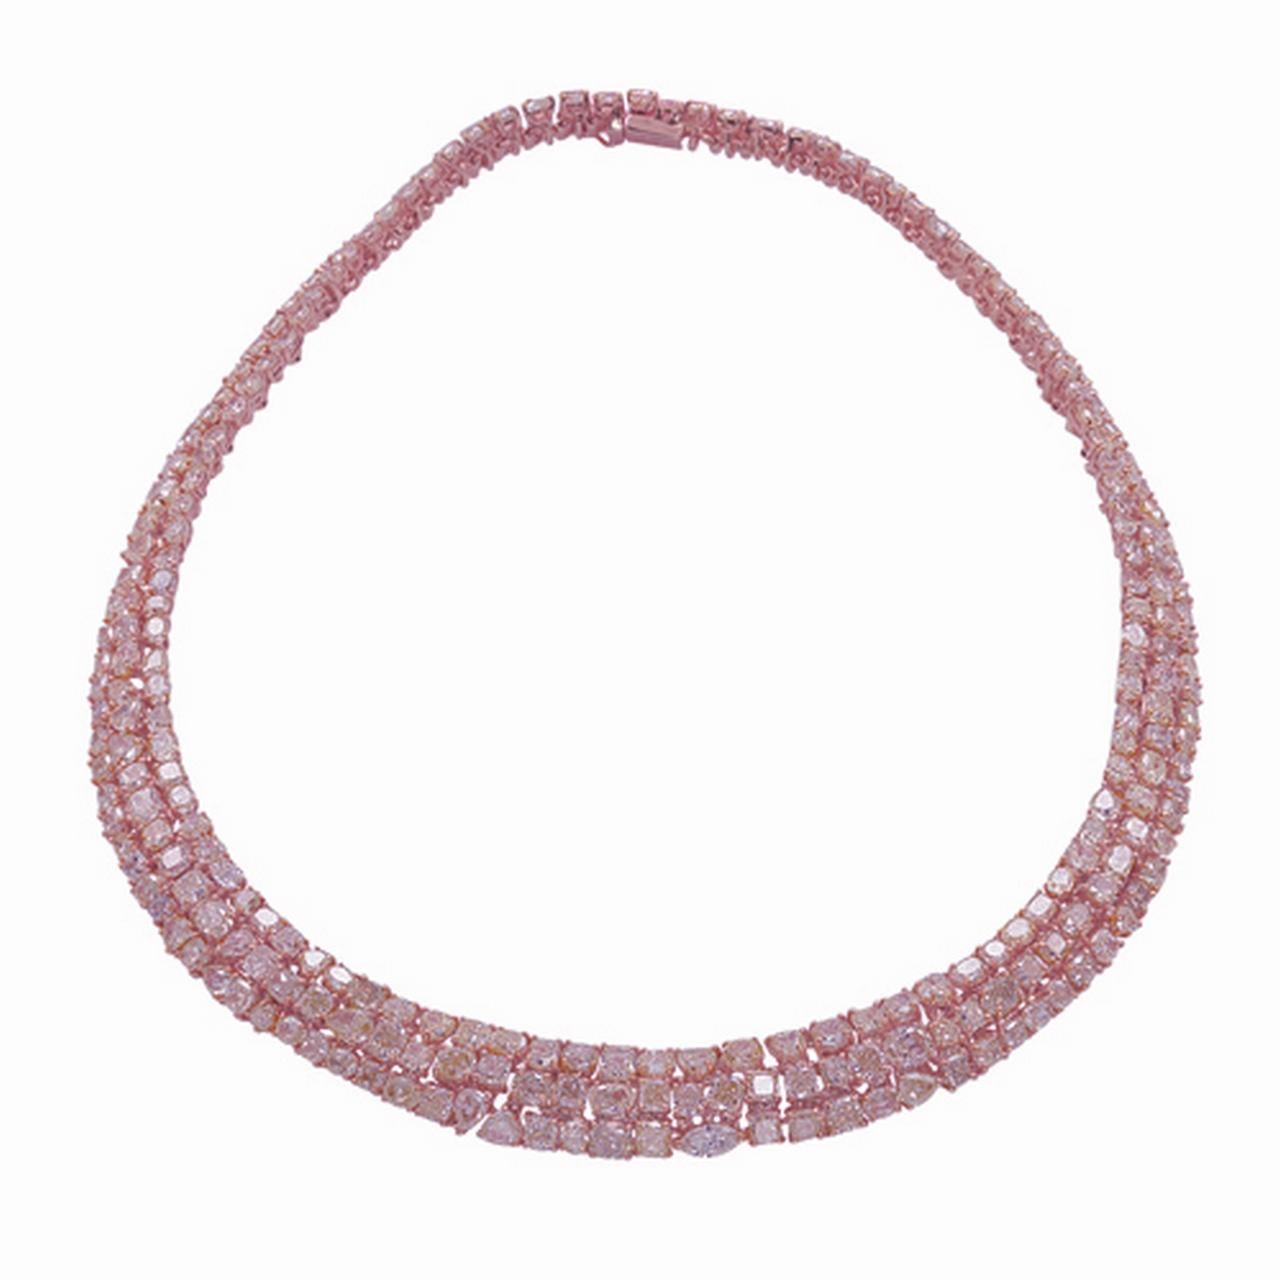 Das folgende Element, das wir anbieten, ist dieses extrem seltene schöne 18KT Gold feine seltene große rosa Diamant aufwendige Meisterwerk einer Halskette. Diese prächtige Halskette besteht aus seltenen, feinen, großen, wunderschön glitzernden, rosa